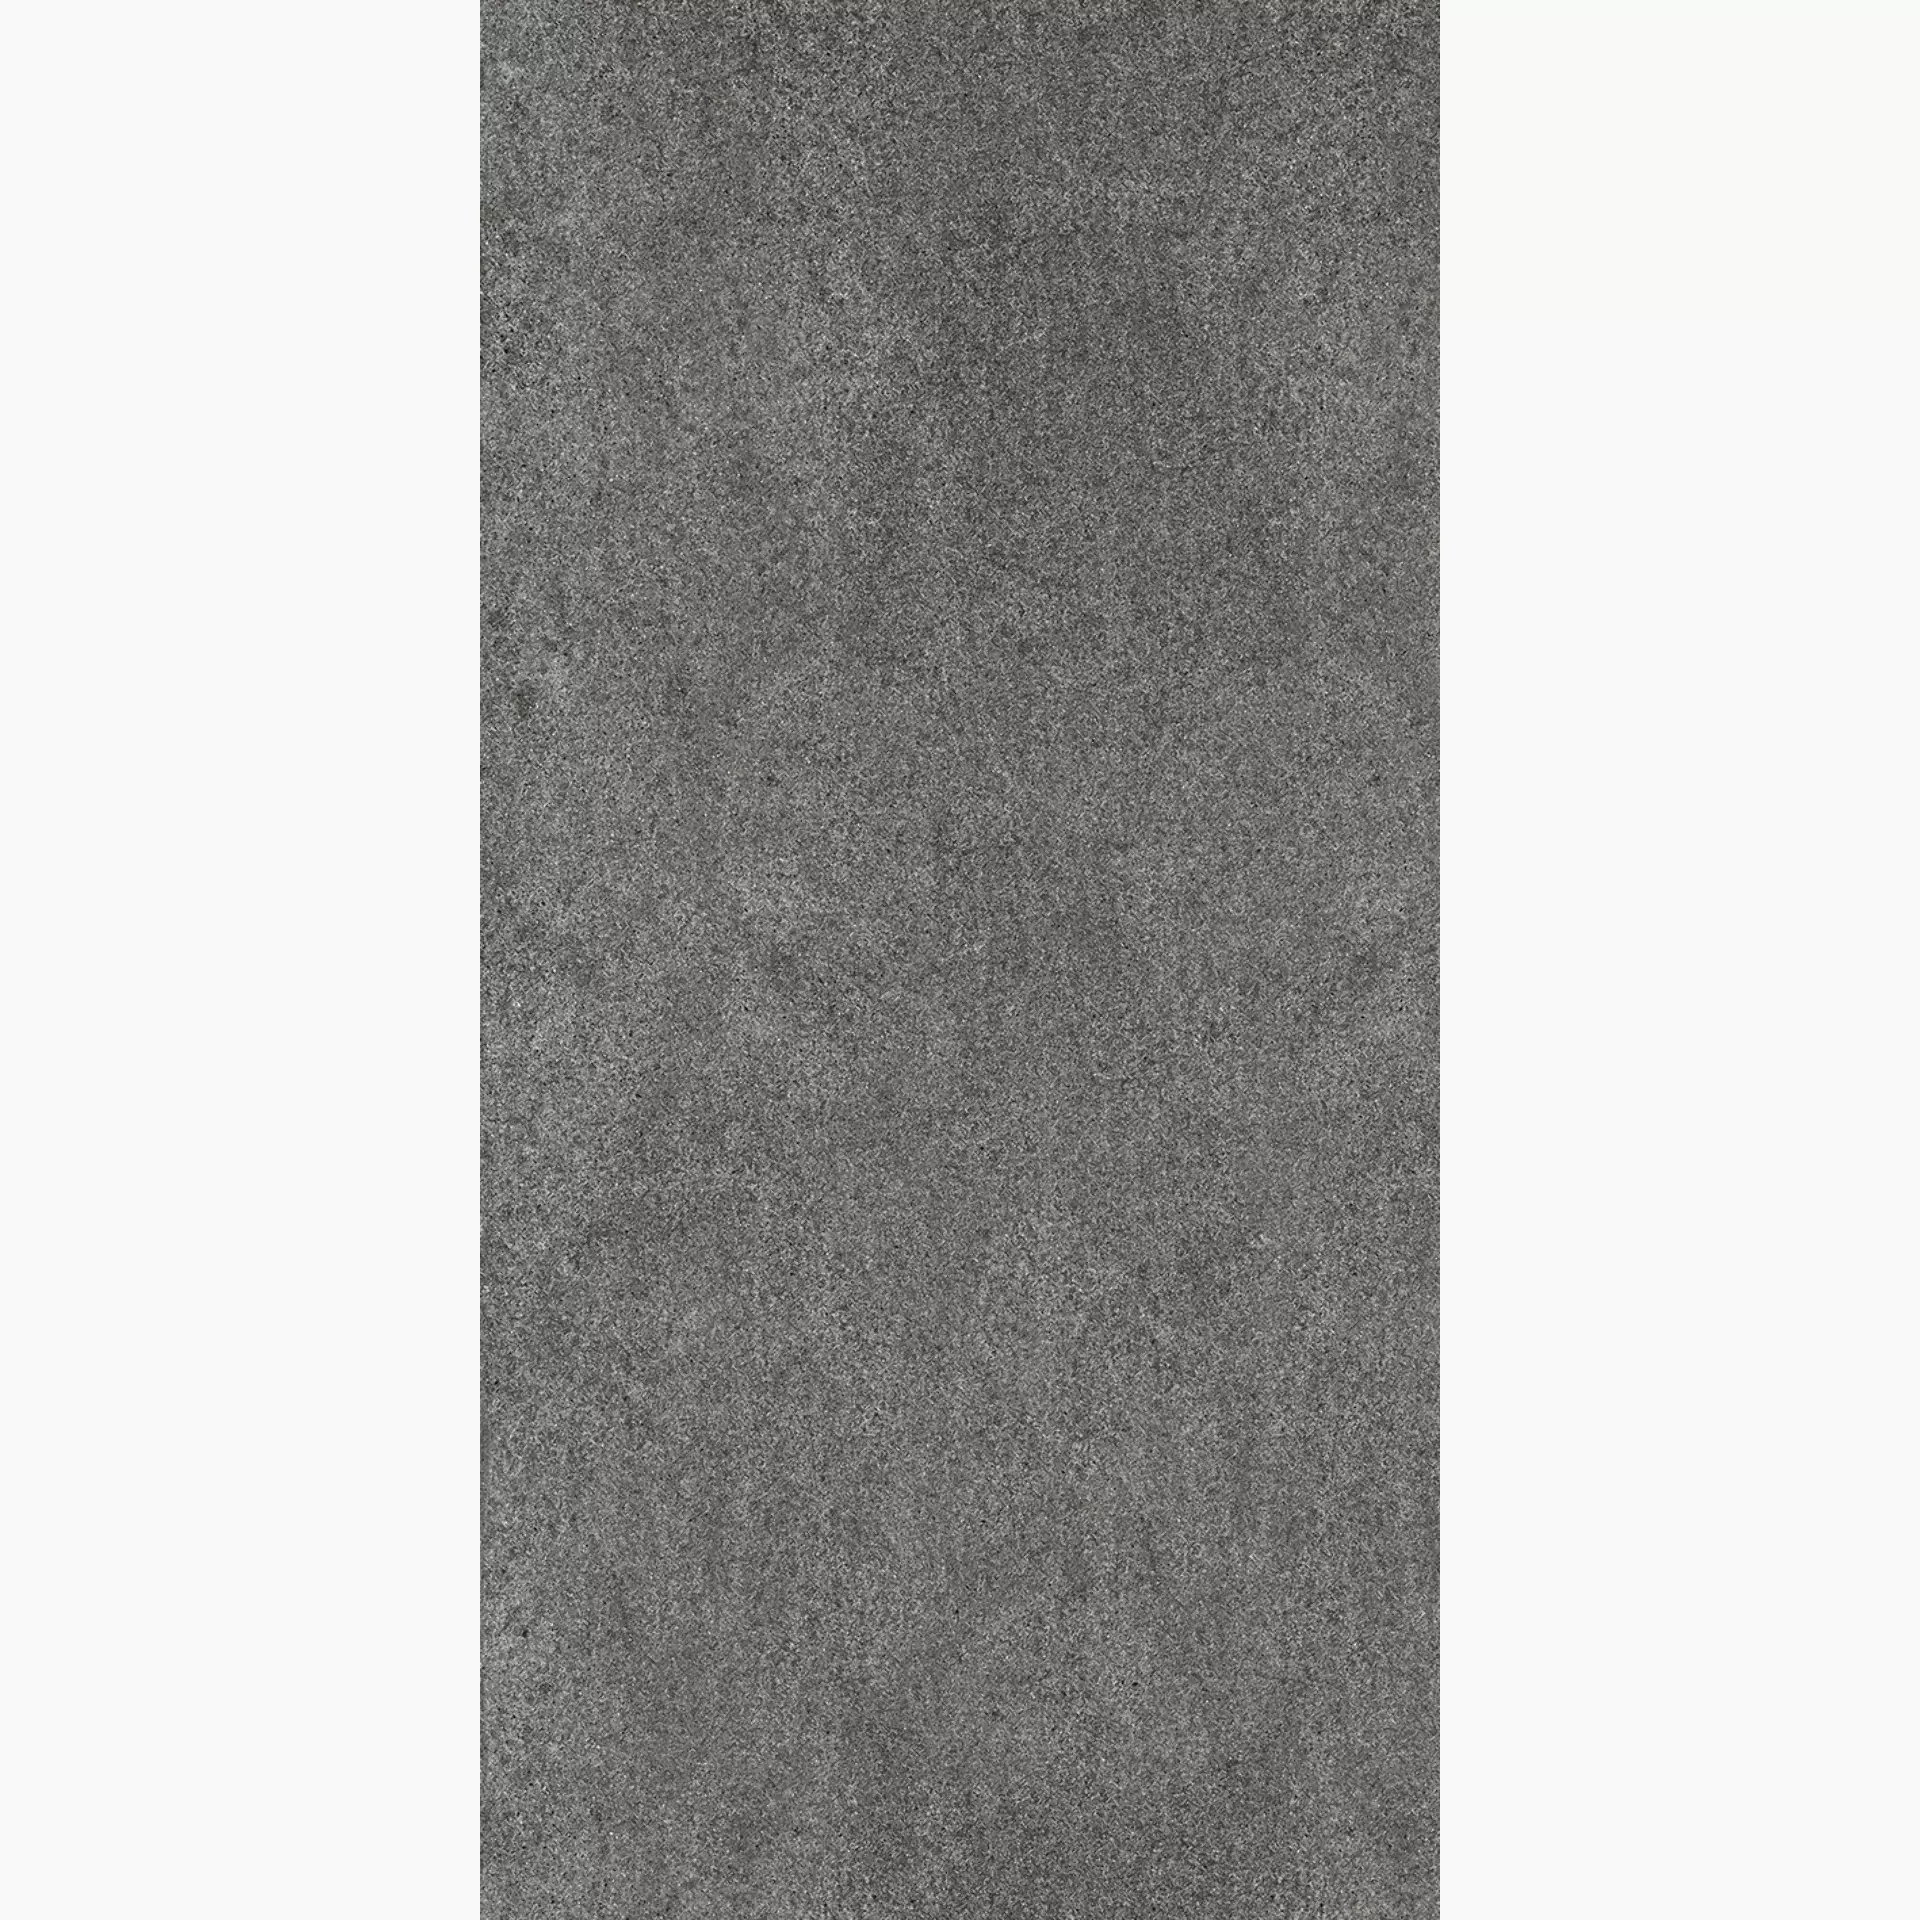 Wandfliese,Bodenfliese Villeroy & Boch Solid Tones Dark Stone Matt Dark Stone 2737-PS62 matt 60x120cm rektifiziert 10mm